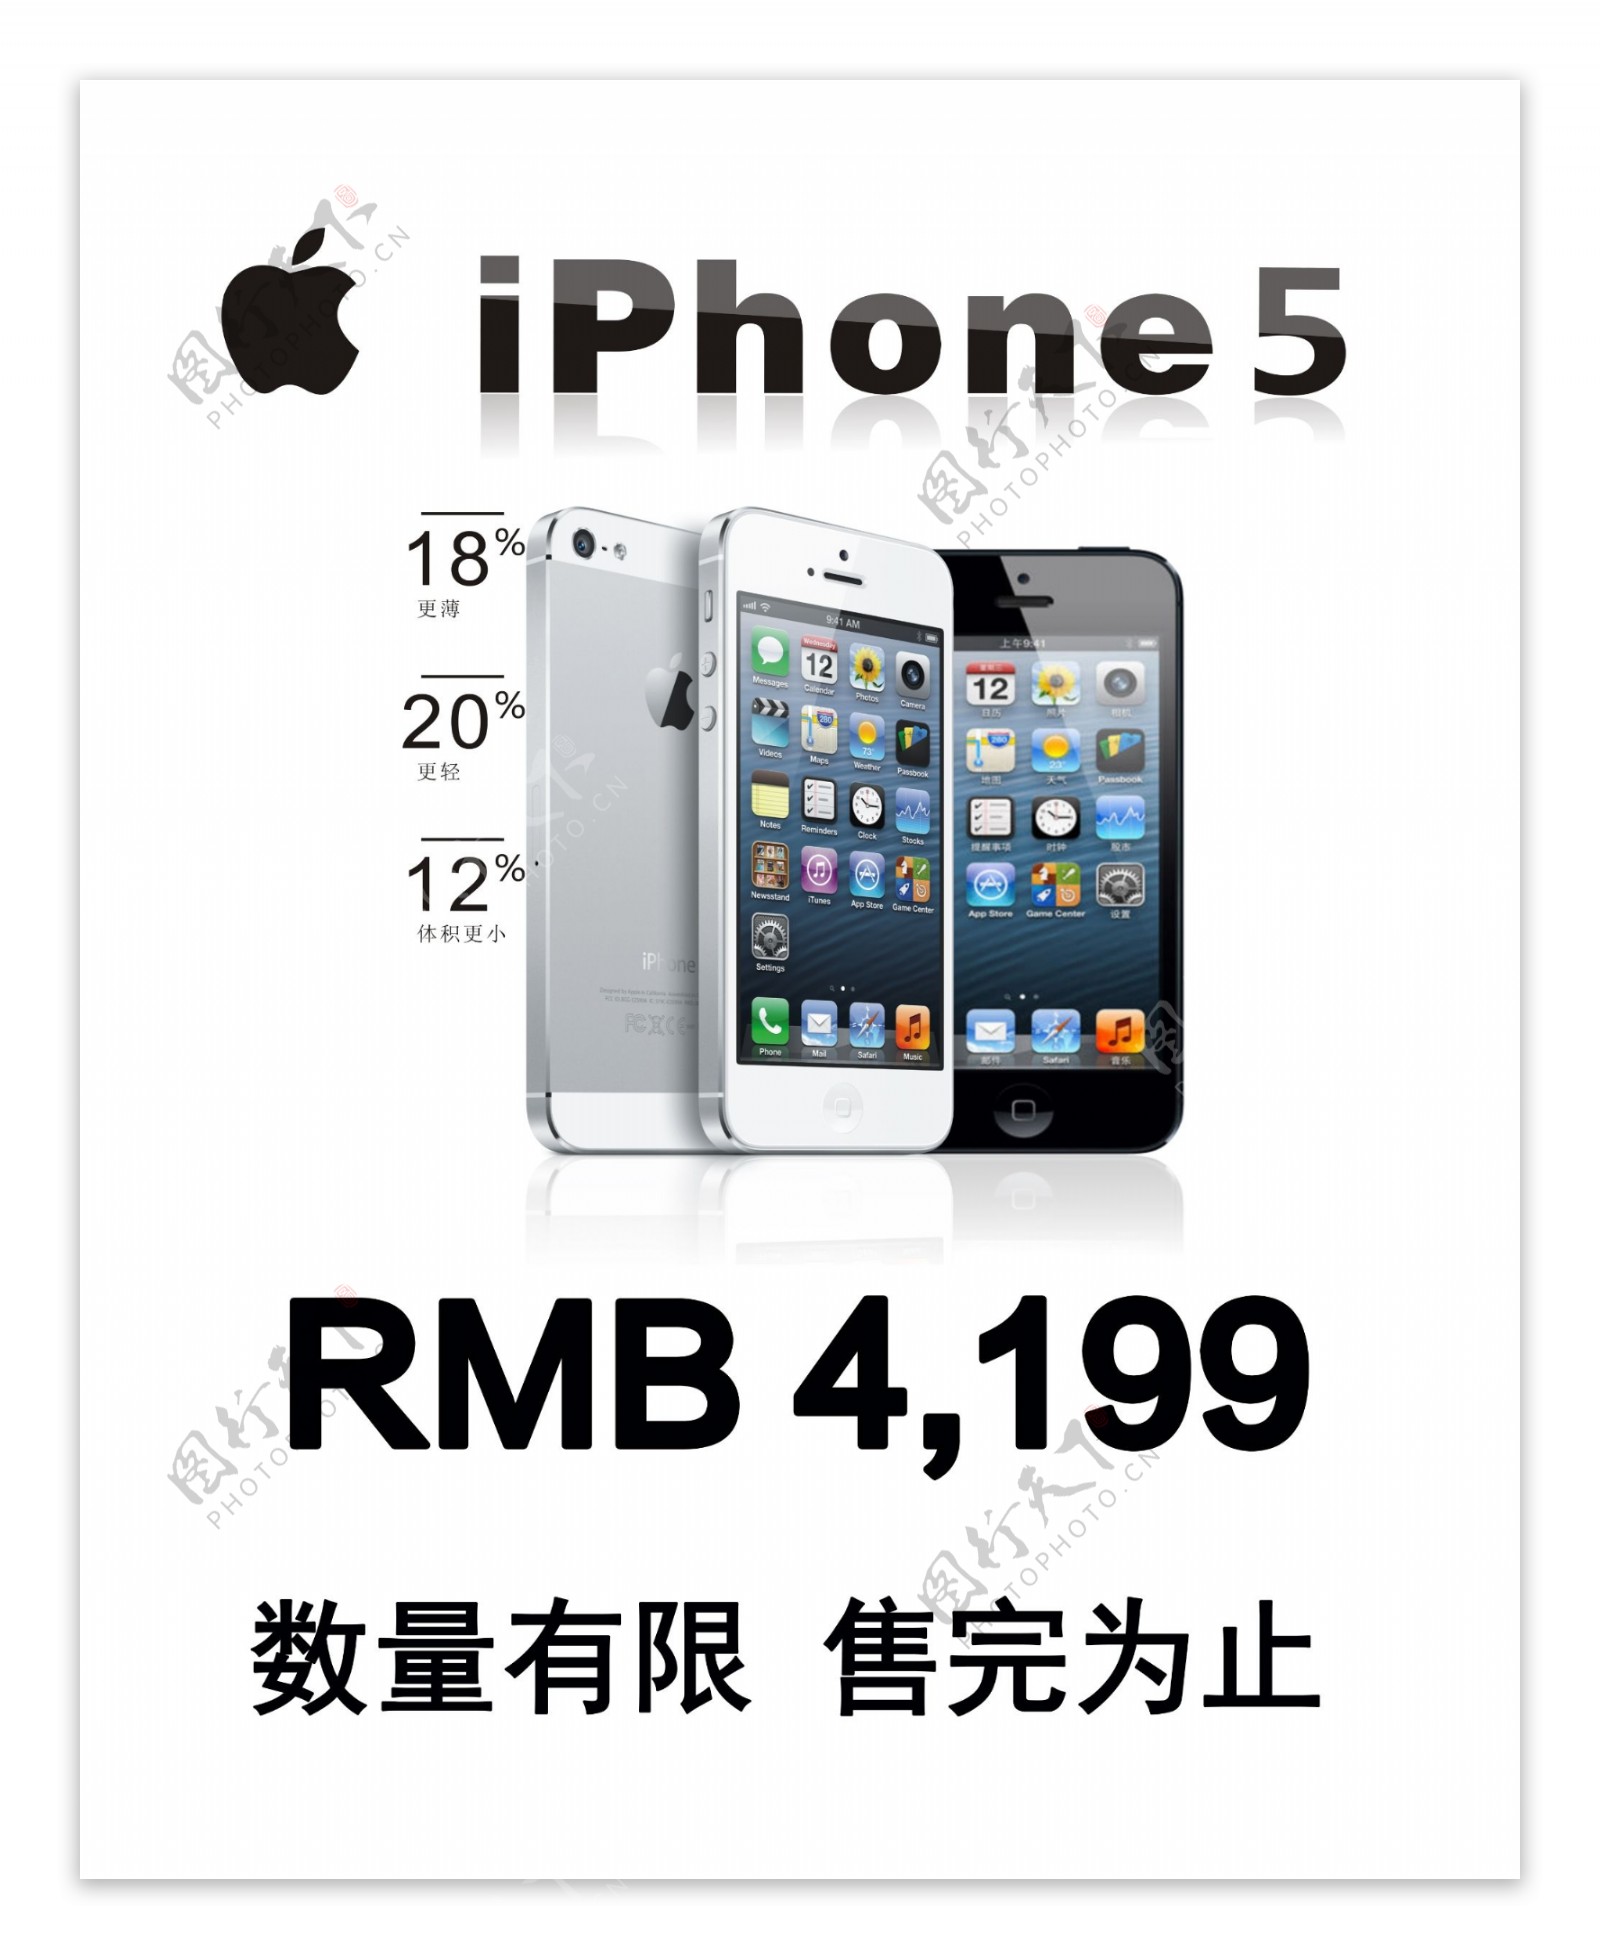 iphone5海报图片